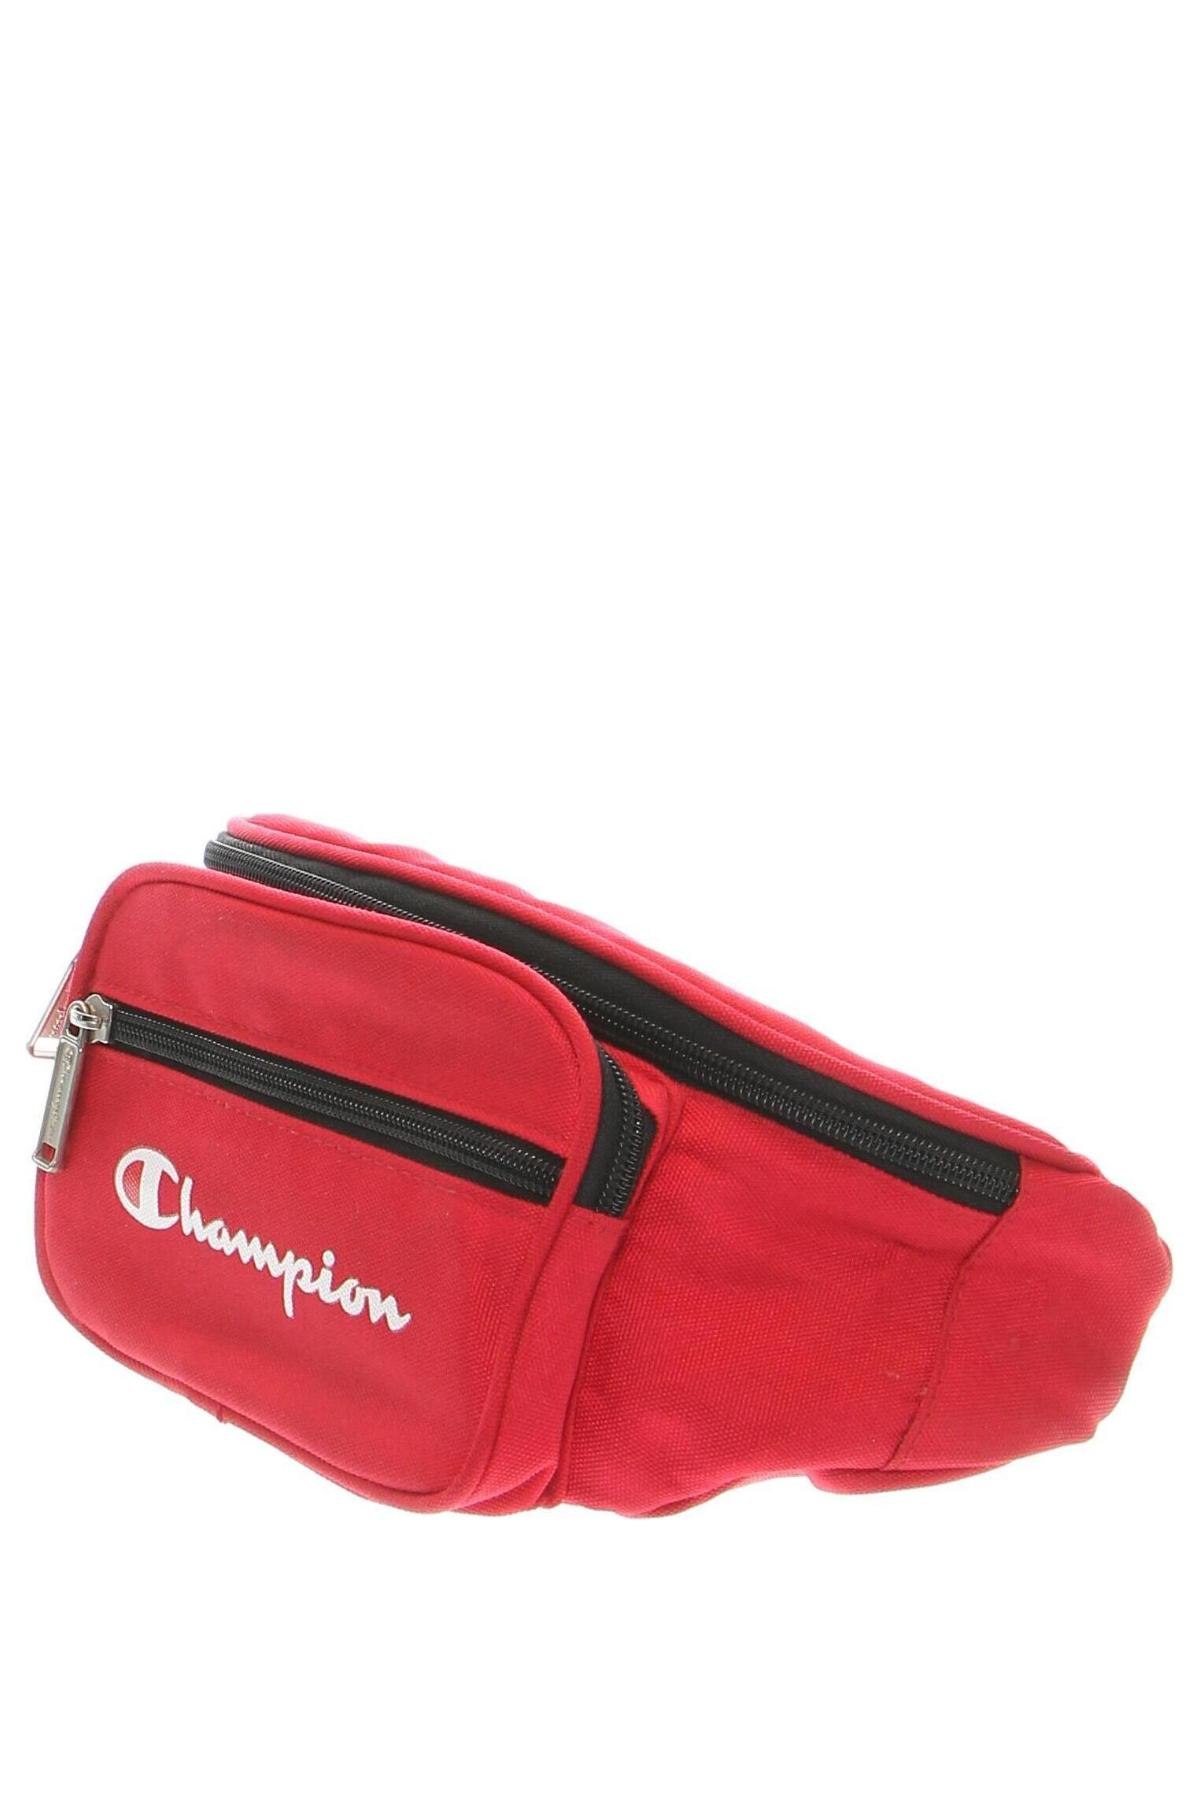 Τσάντα Champion, Χρώμα Κόκκινο, Τιμή 24,00 €